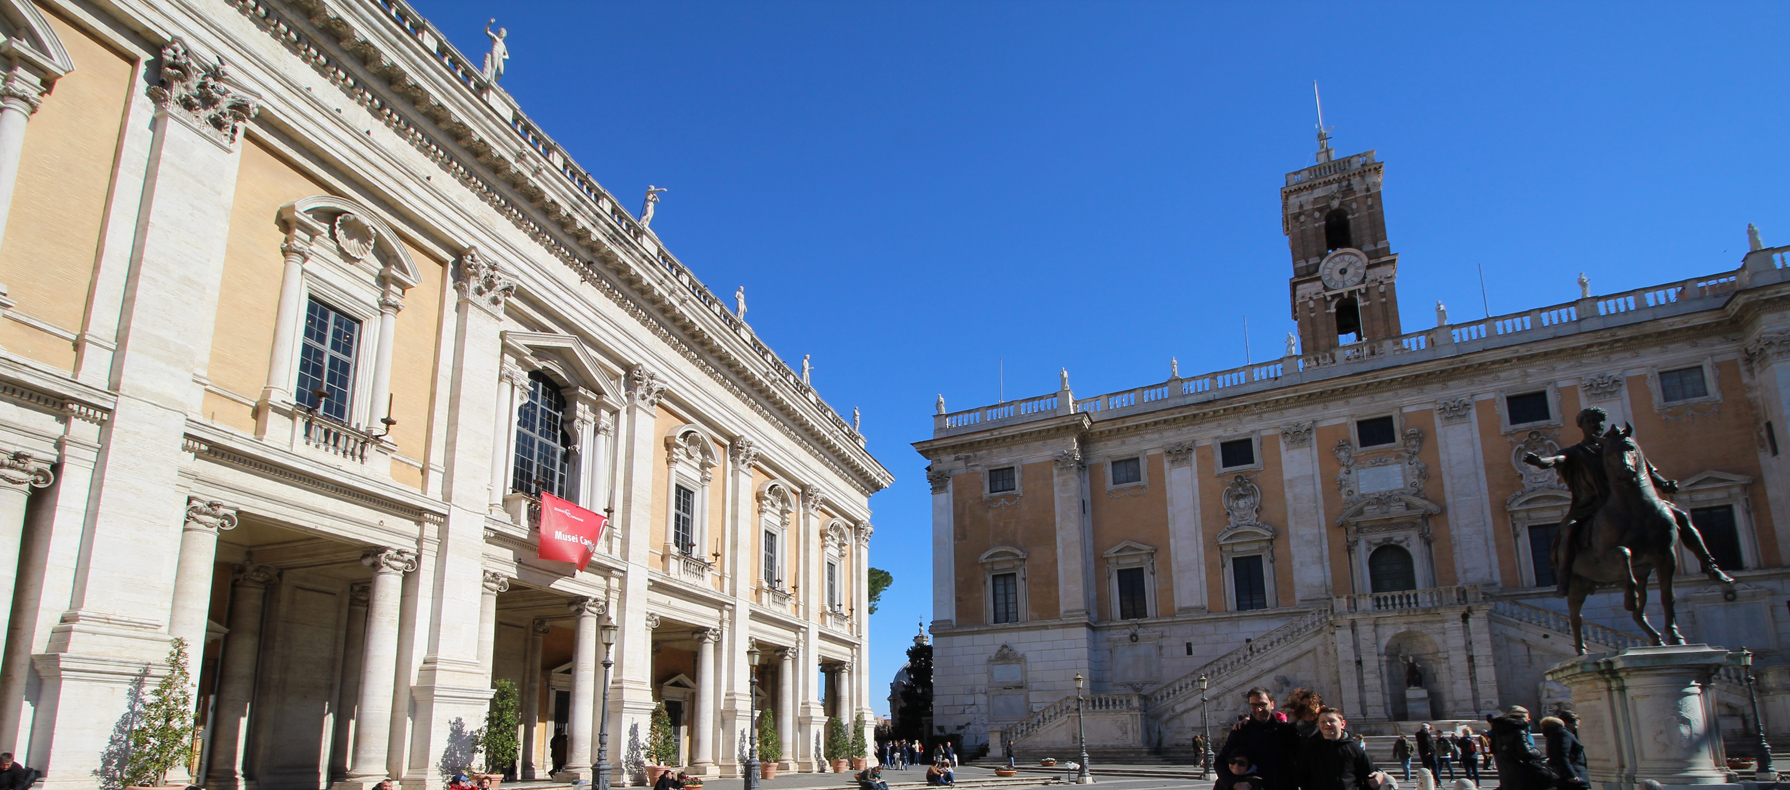 Museo Capitolinos en Roma: La historia